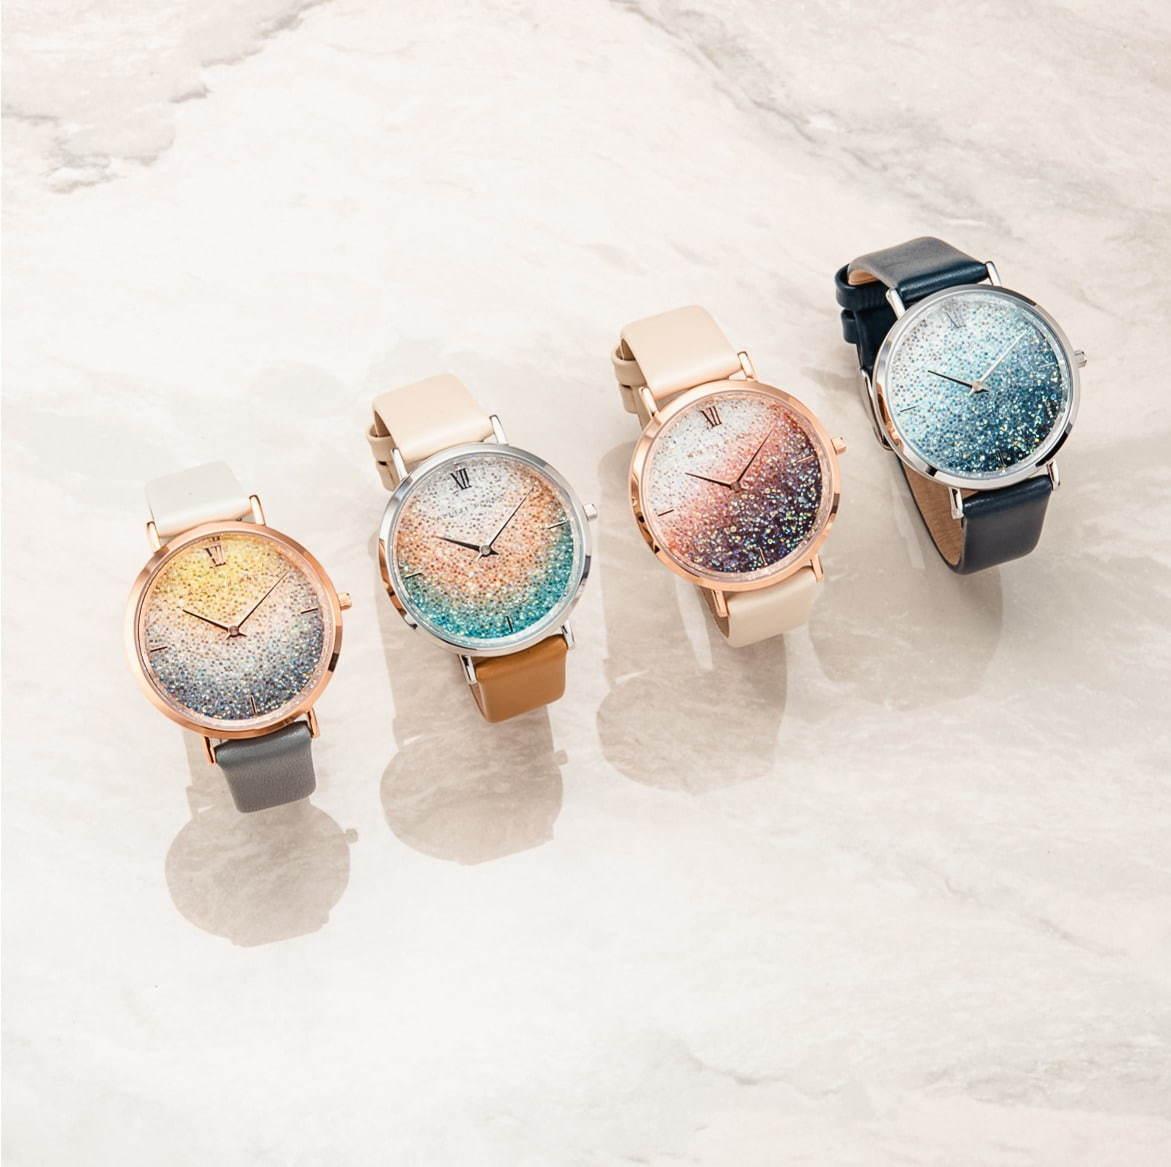 アレットブランの腕時計「ムーンフラワー」に新色、“キラキラ”スワロフスキーのグラデカラー コピー